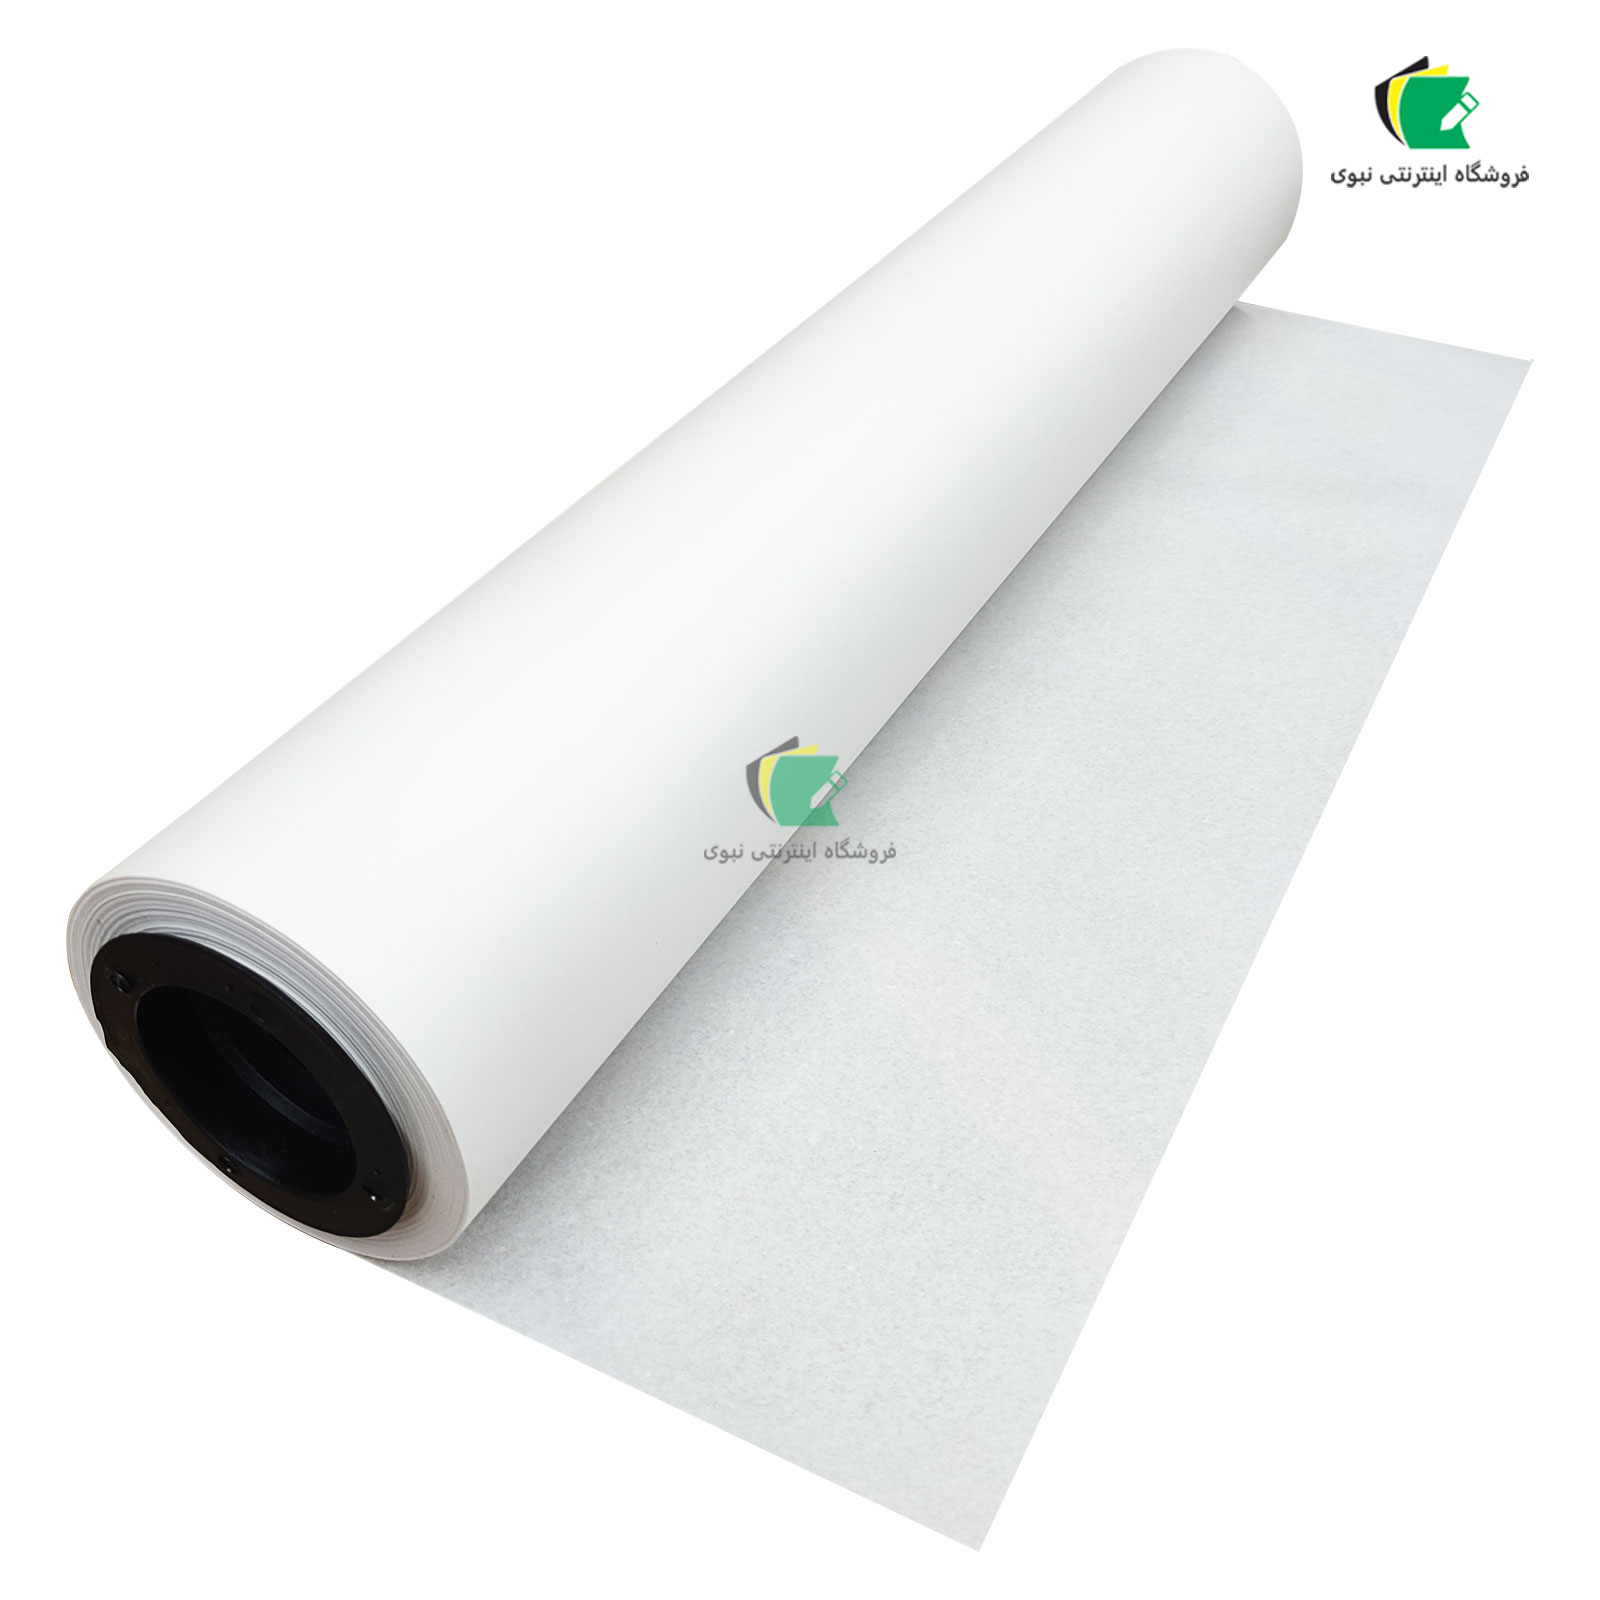 رول کاغذ پوستی یک رو مومی 30 گرم عرض 50 سانتیمتر طول 100 متر